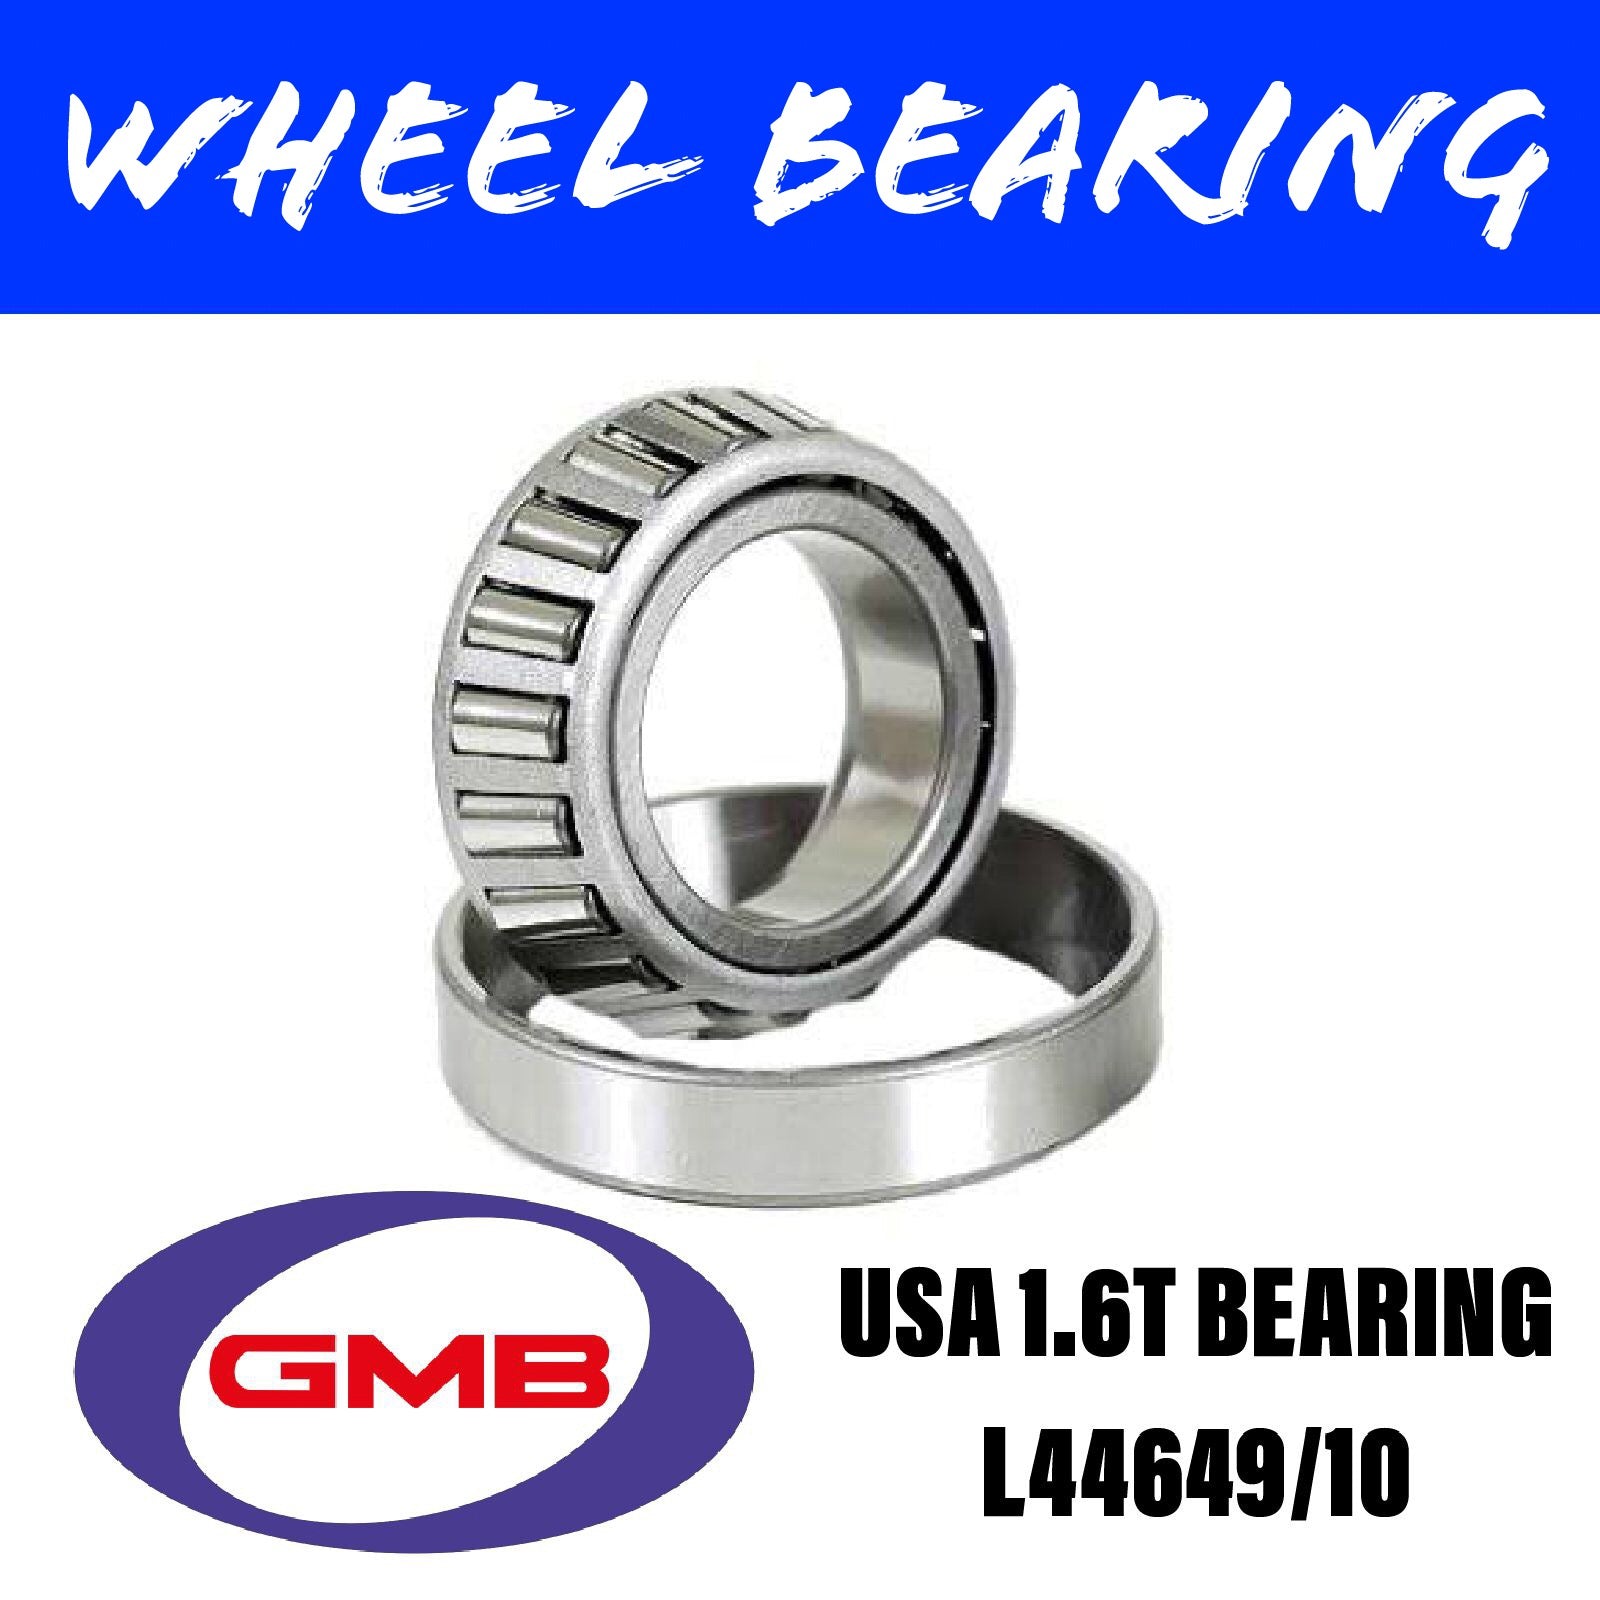 GMB L44649/10 Wheel Bearing